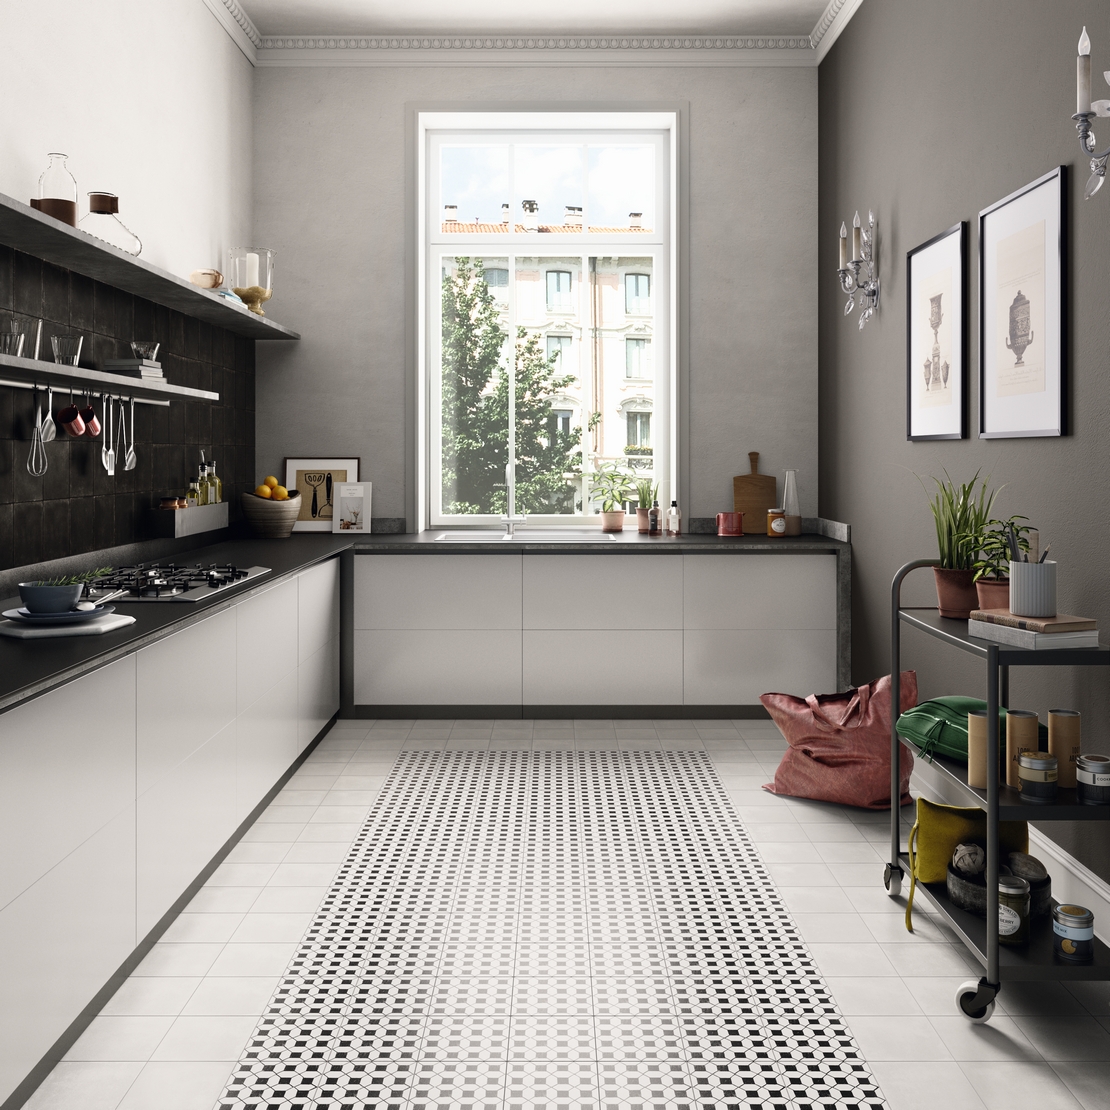 Cucina moderna ad angolo con piastrelle effetto maiolica bianca e nera -  Ambienti Iperceramica